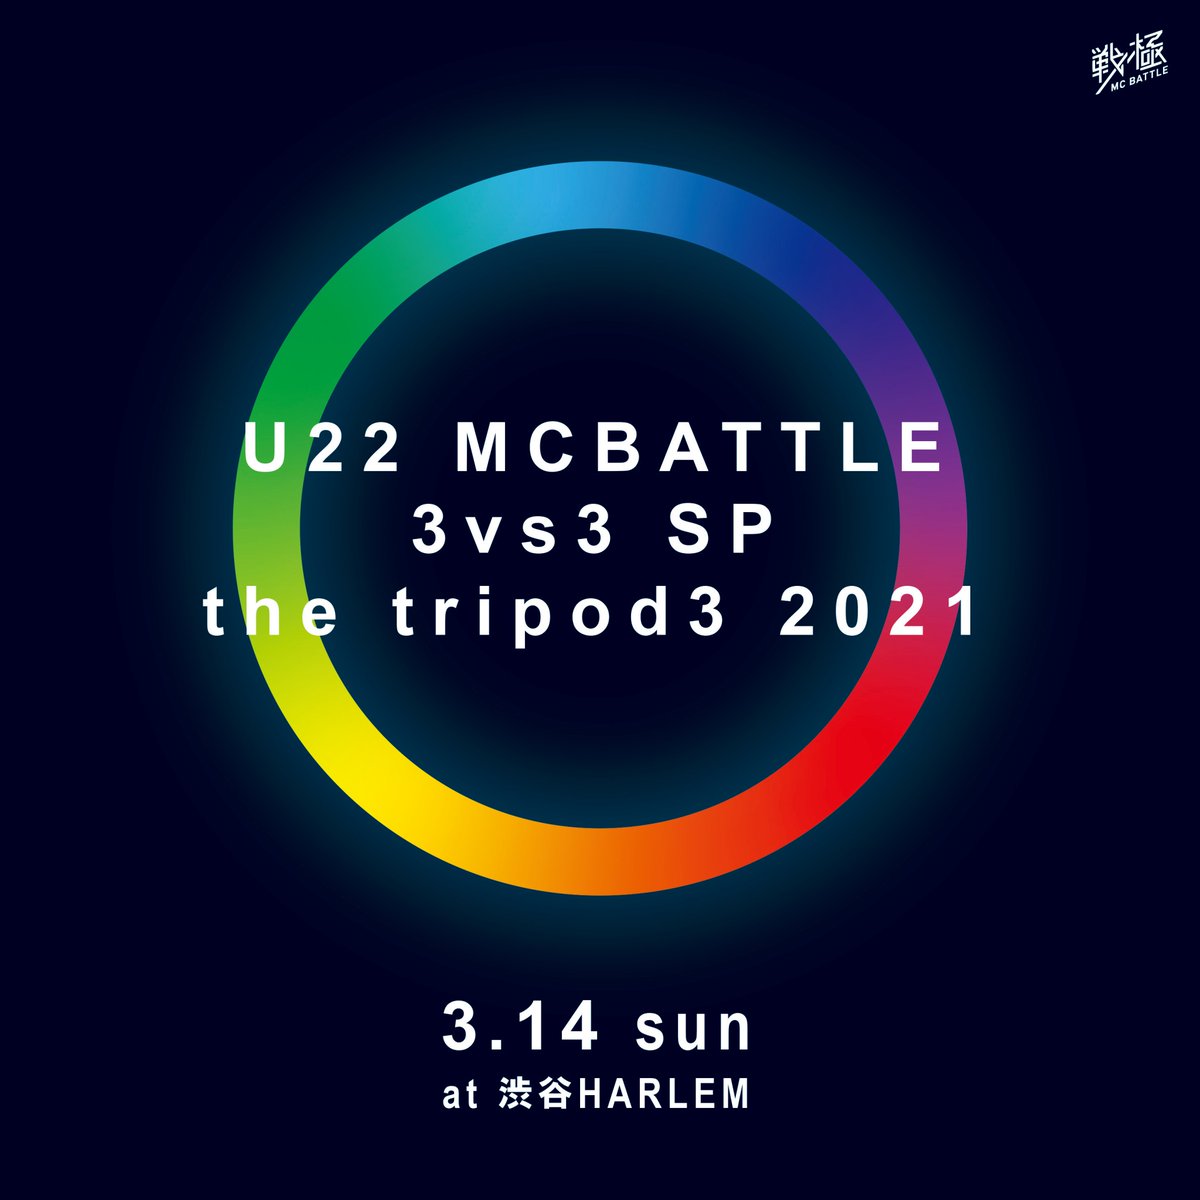 戦極mcbattle 公式 21年3月14日 U22 Mcbattle 3vs3 Sp The Tripod3 21 渋谷harlem 全10チーム 8チーム選抜 予選2チーム